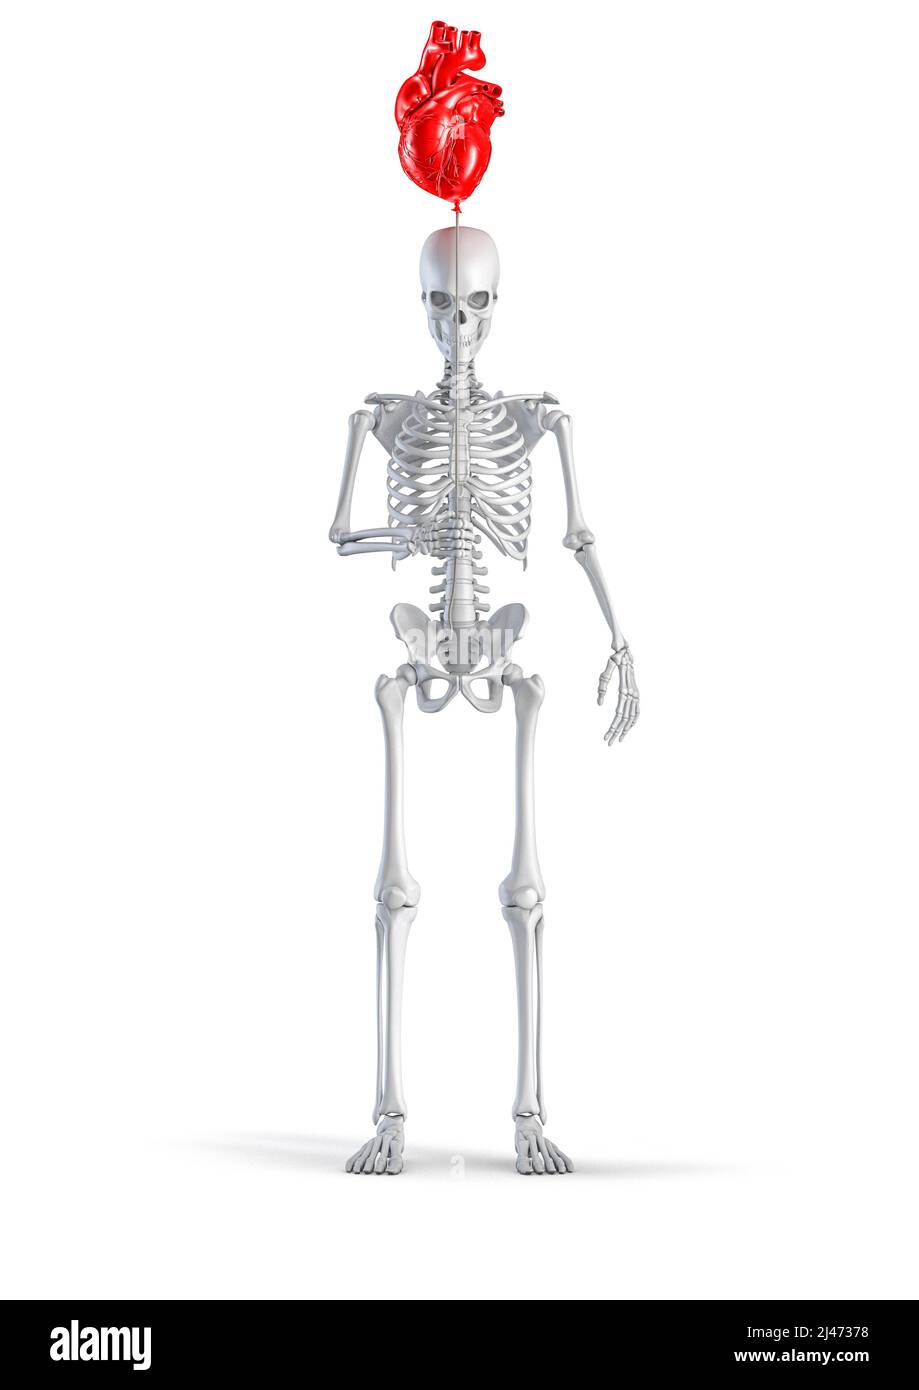 Skelett mit Herzballon - 3D Abbildung des männlichen menschlichen Skelett Figur hält roten Kunststoff anatomischen Herz geformten Ballon isoliert auf weiß Stockfoto